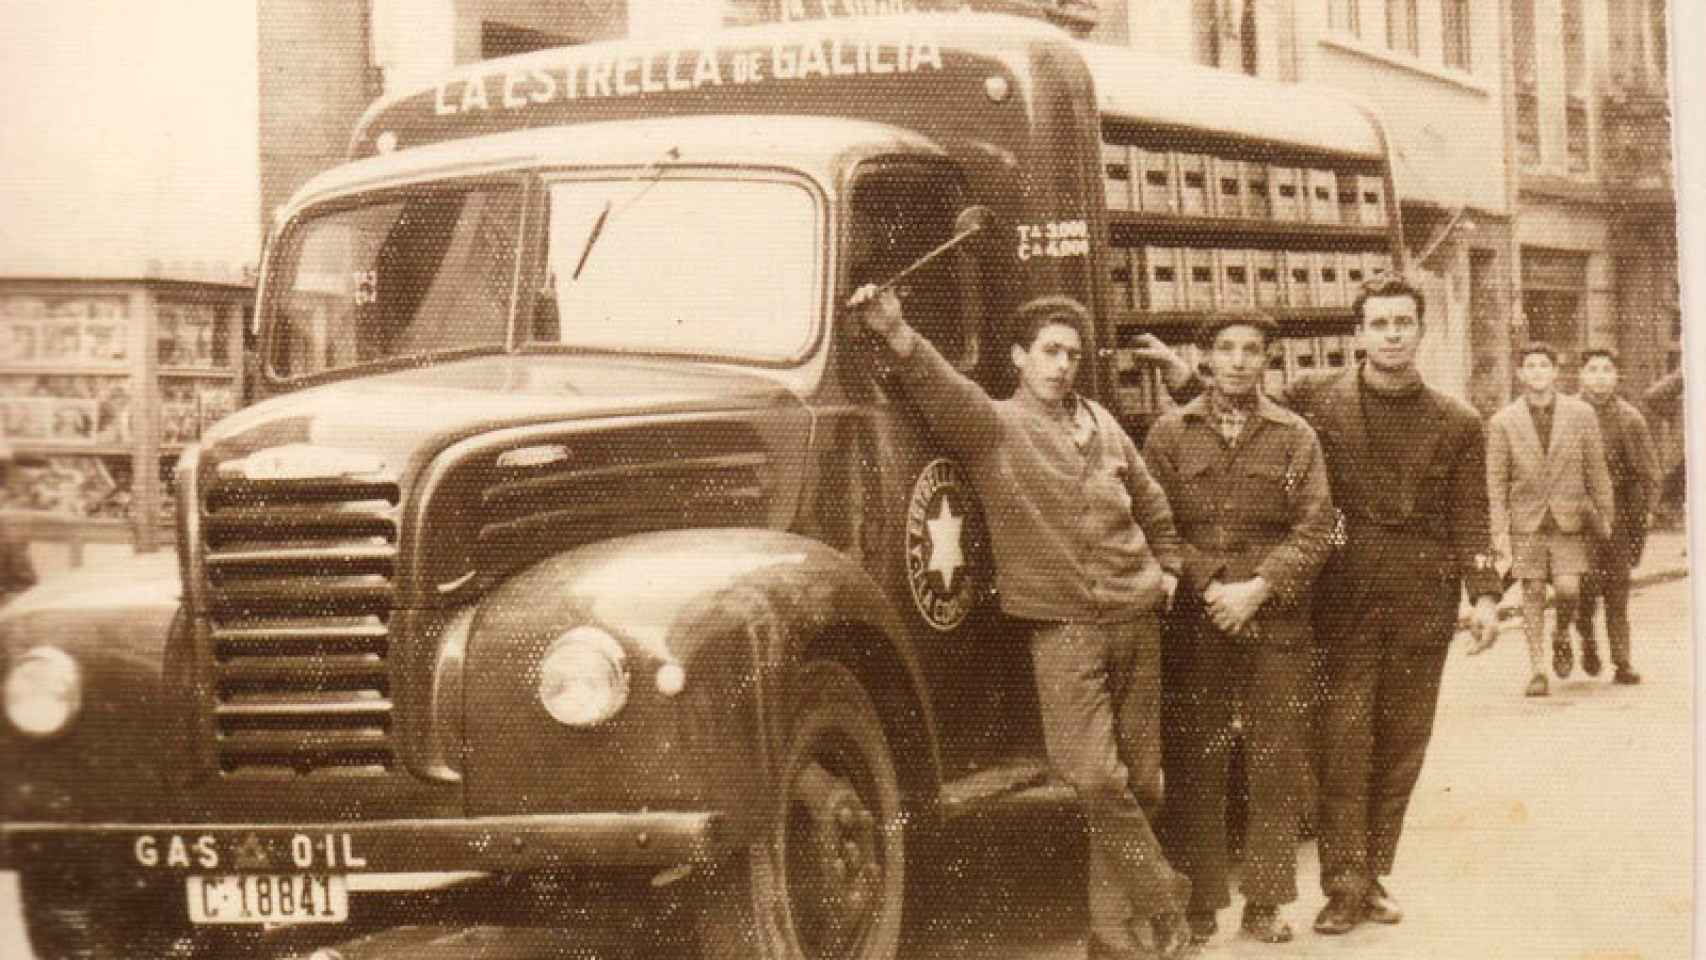 Repartidores de cerveza Estrella Galicia.